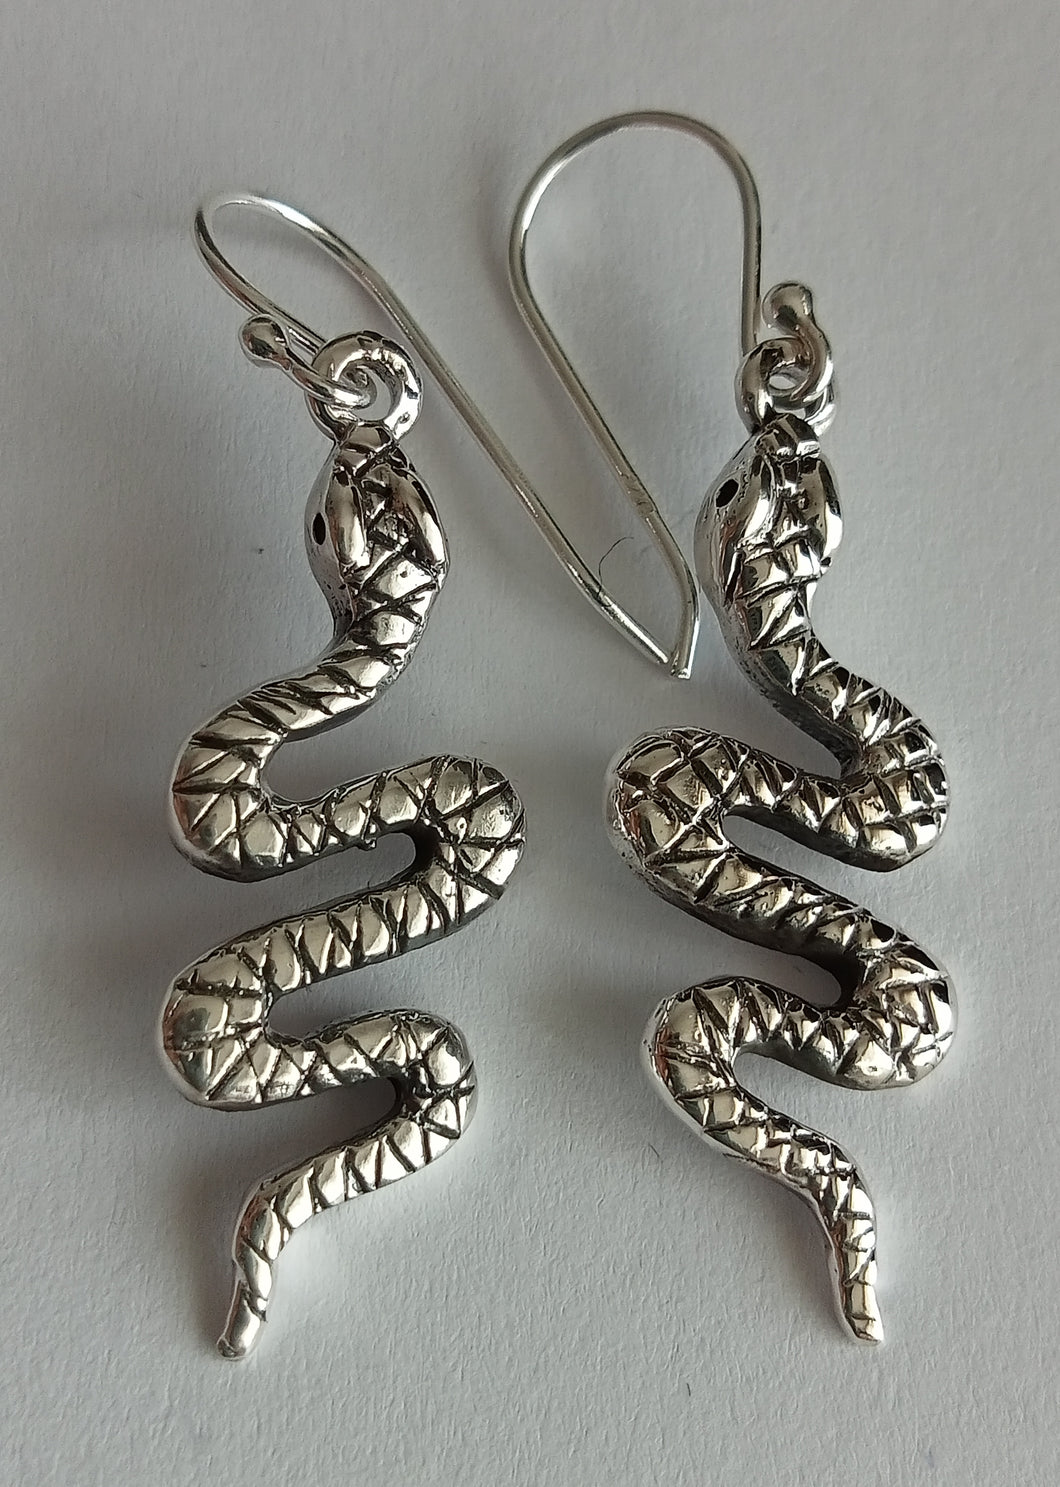 Coiled Snake Earrings